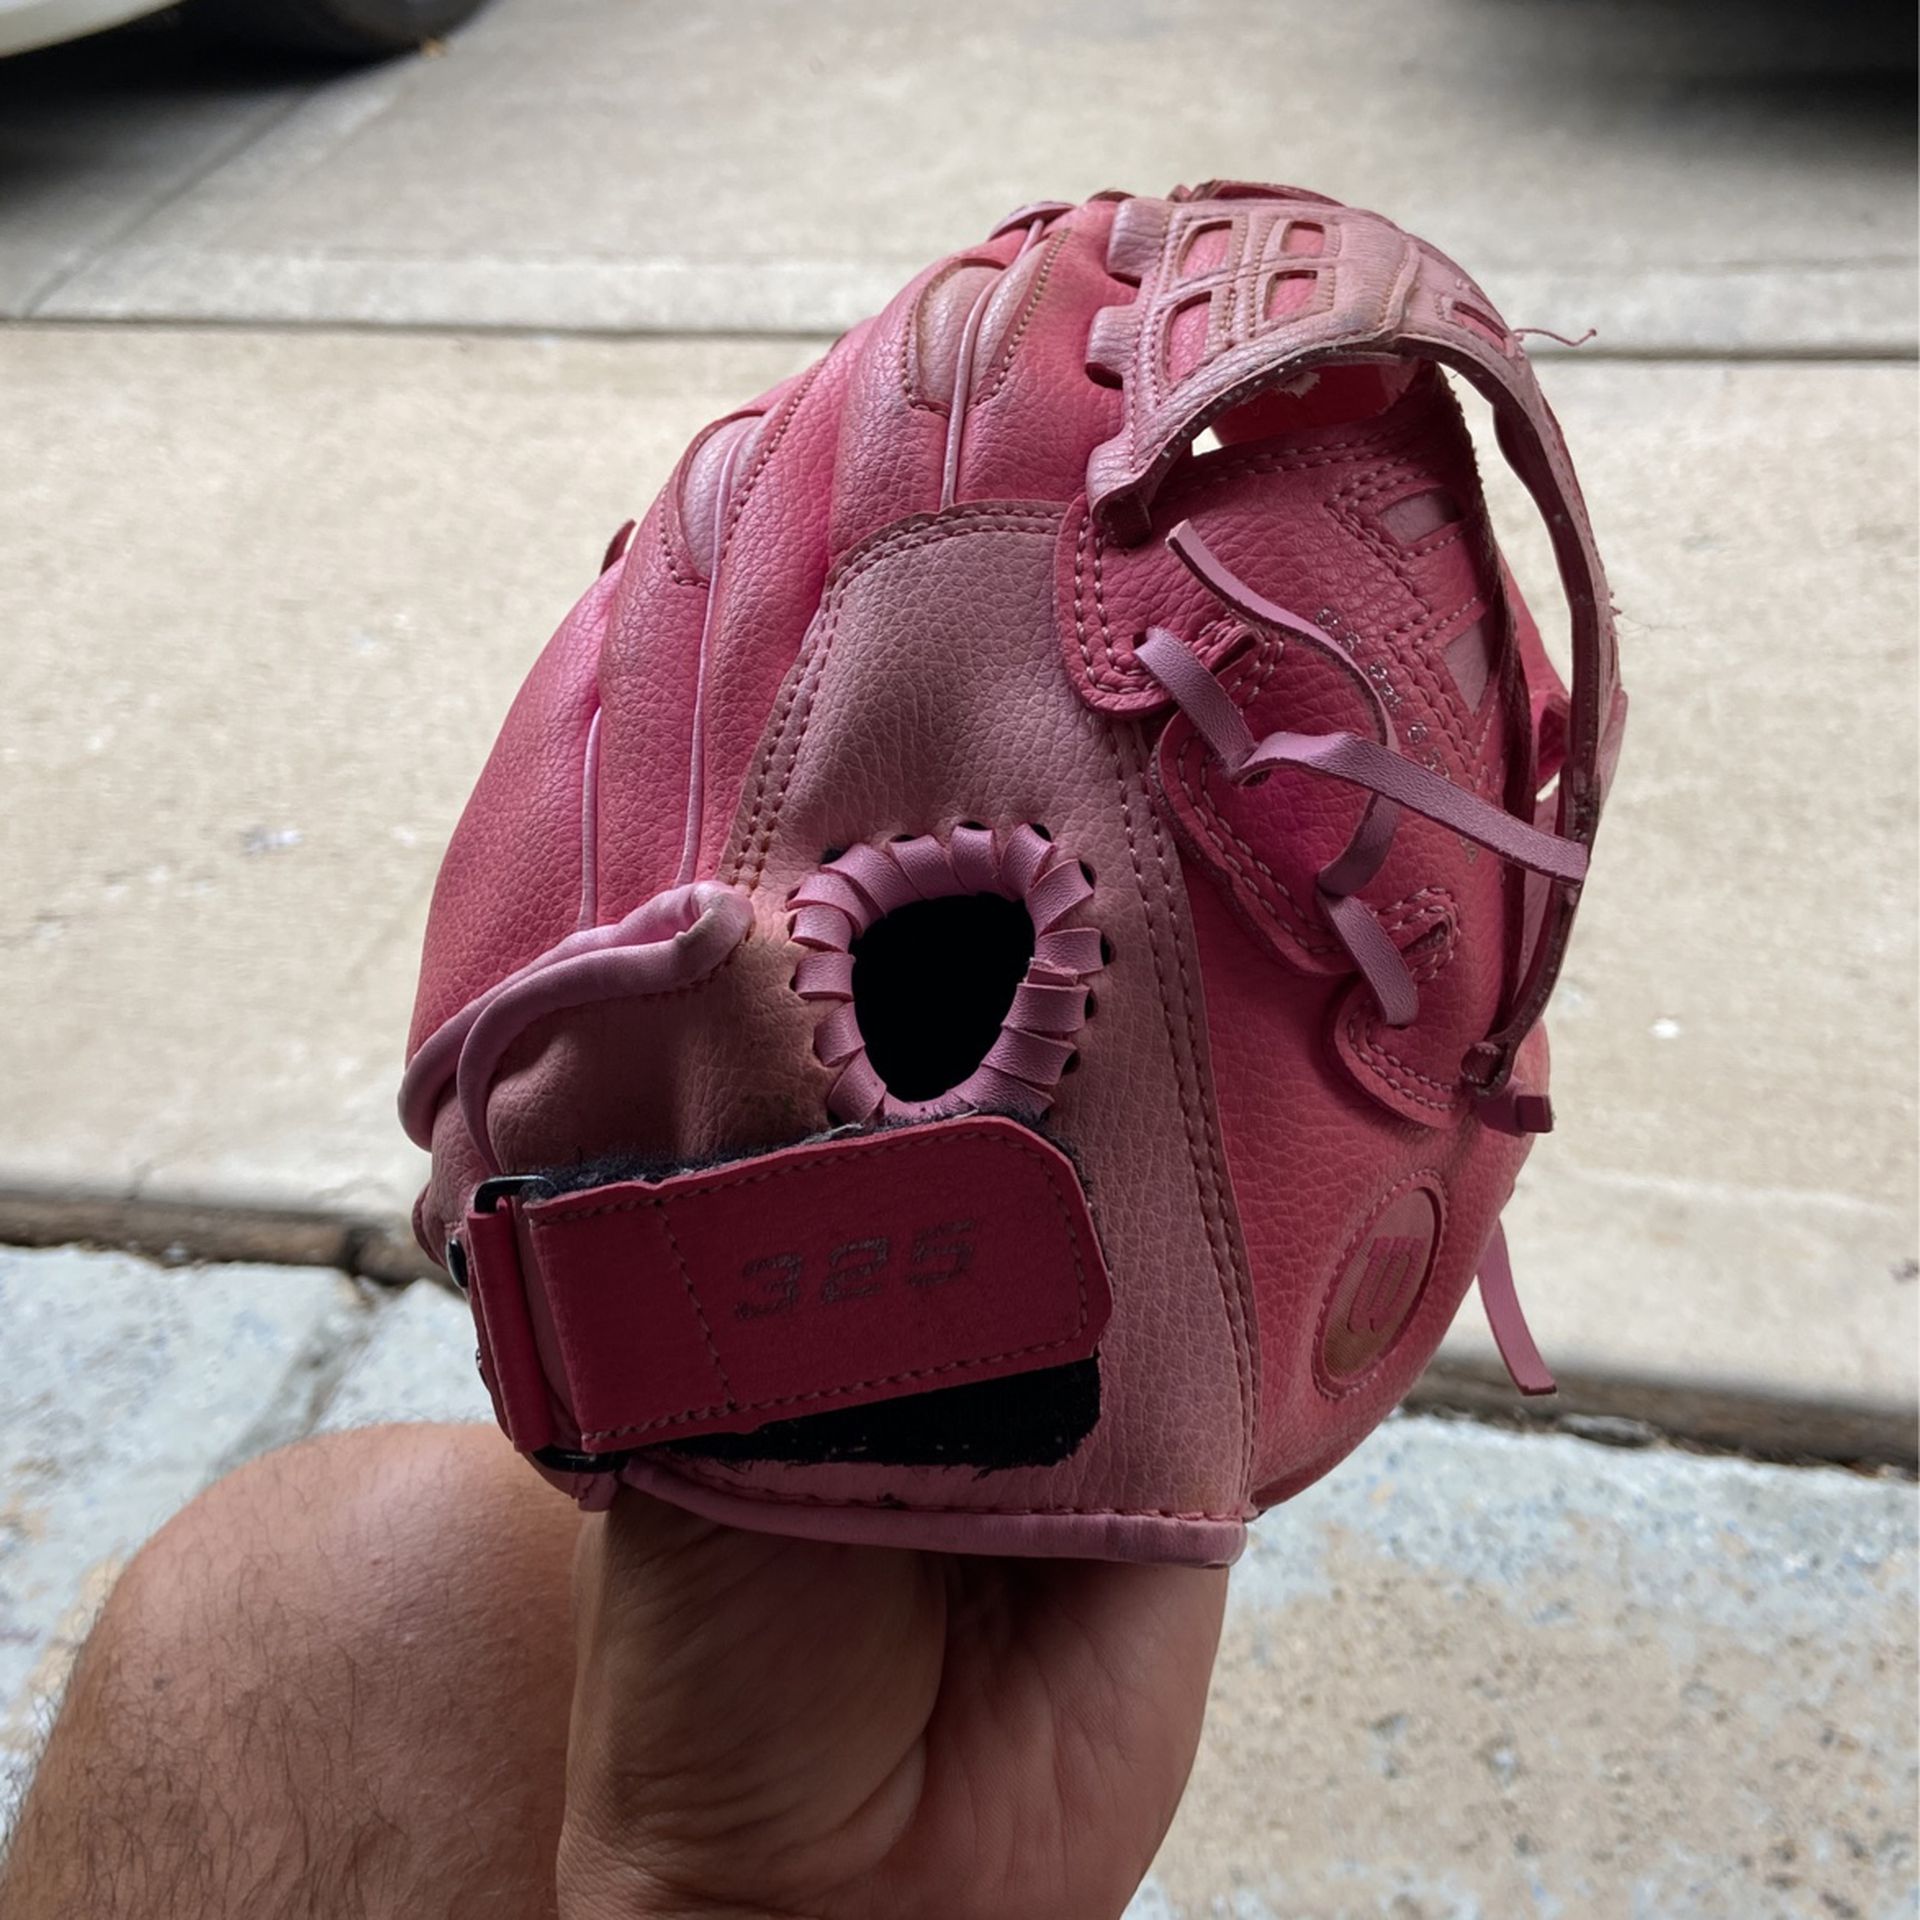 Girls Baseball Glove